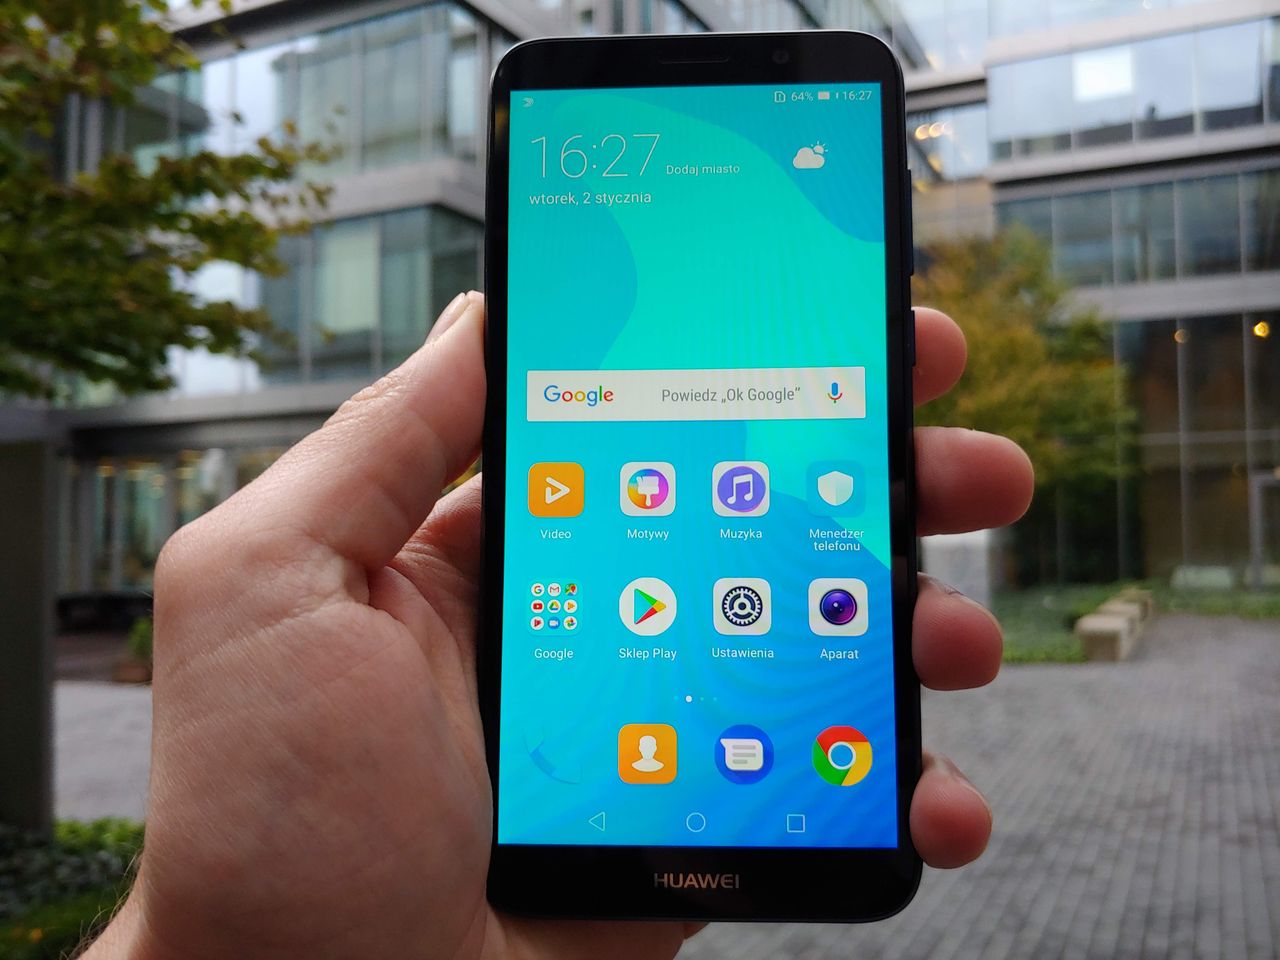 Wielki test smartfonów za 500 zł. Sprawdzamy Huawei Y5 2018